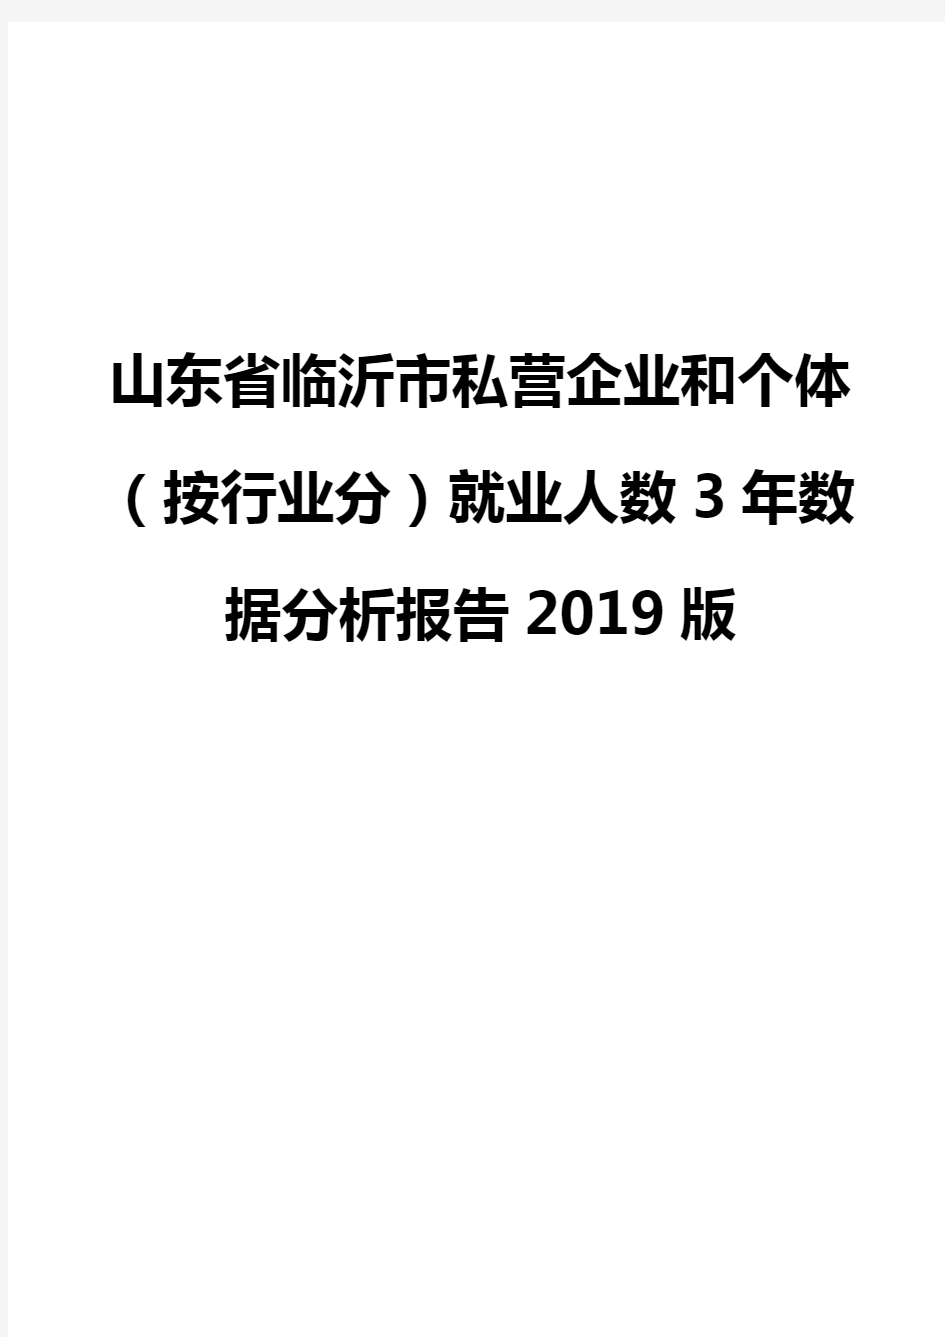 山东省临沂市私营企业和个体(按行业分)就业人数3年数据分析报告2019版